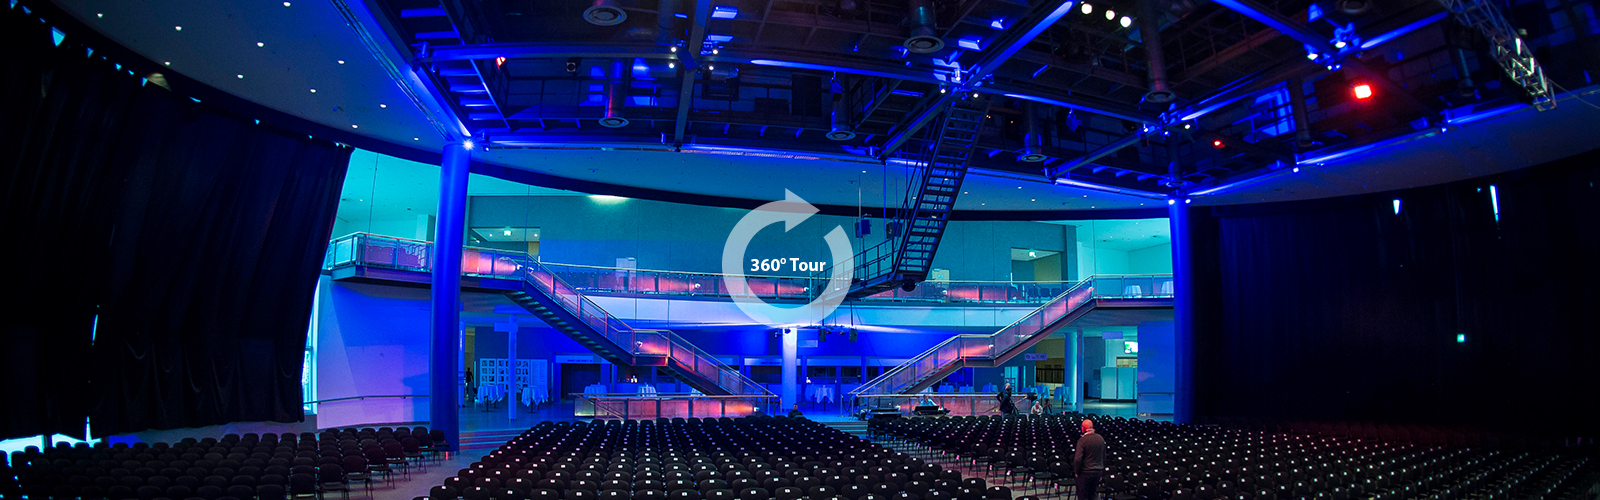 Virtuelle 360° Tour durch die Musik- und Kongresshalle Lübeck